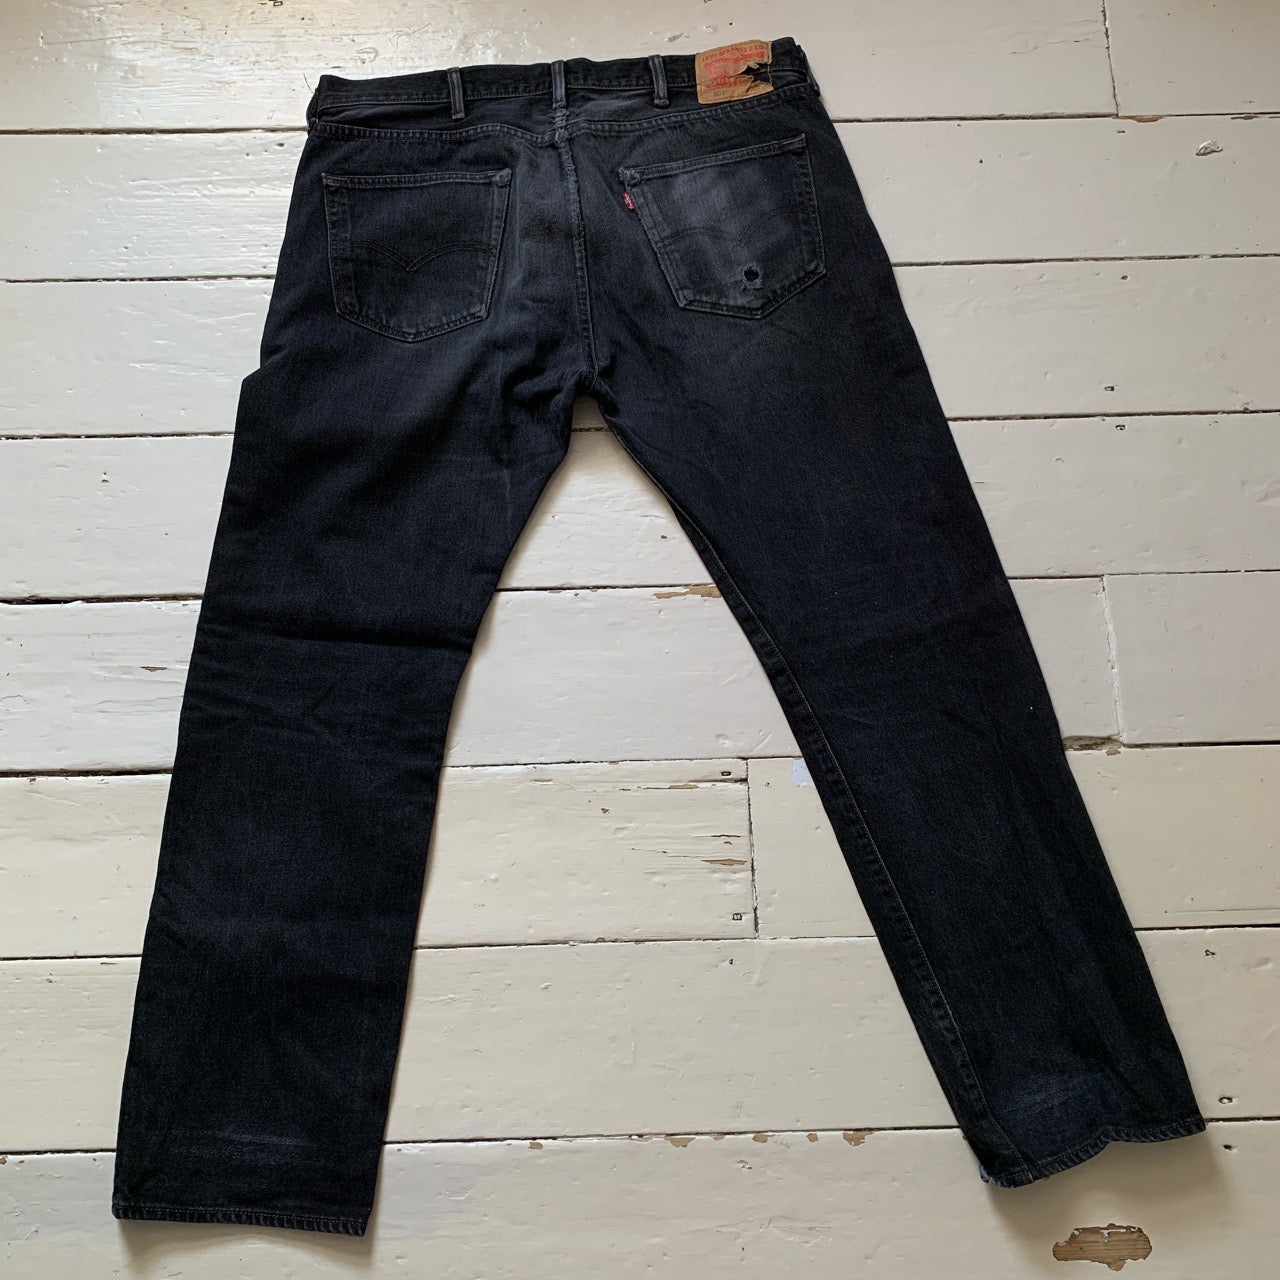 Levis 501 Black Jeans (38/32)